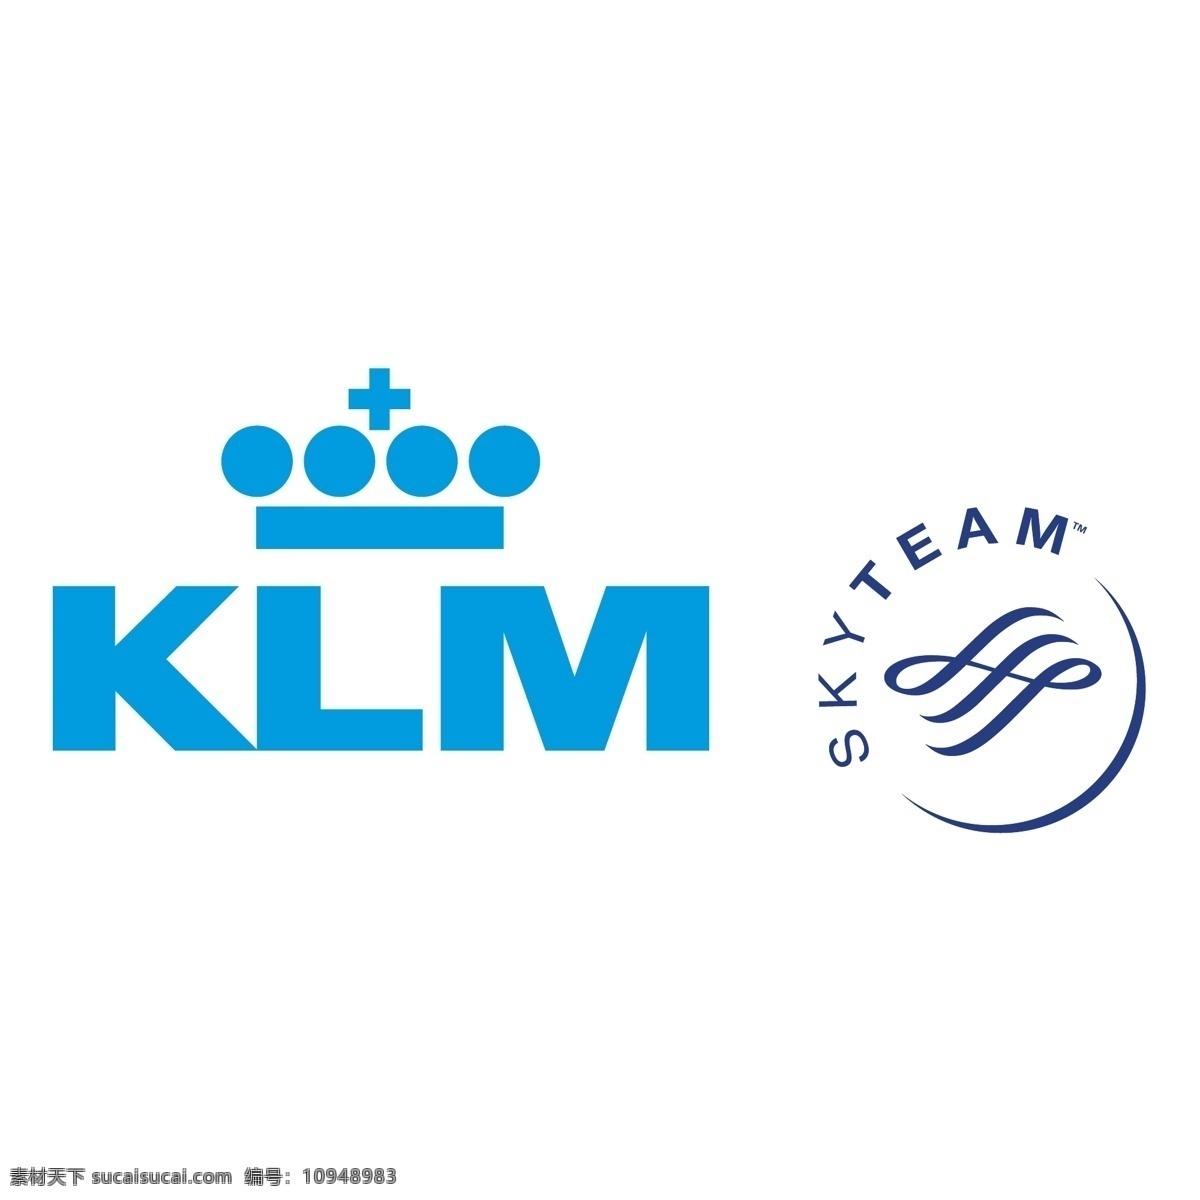 荷兰 皇家 航空公司 荷 航 klm 标识 标识为免费 psd源文件 logo设计